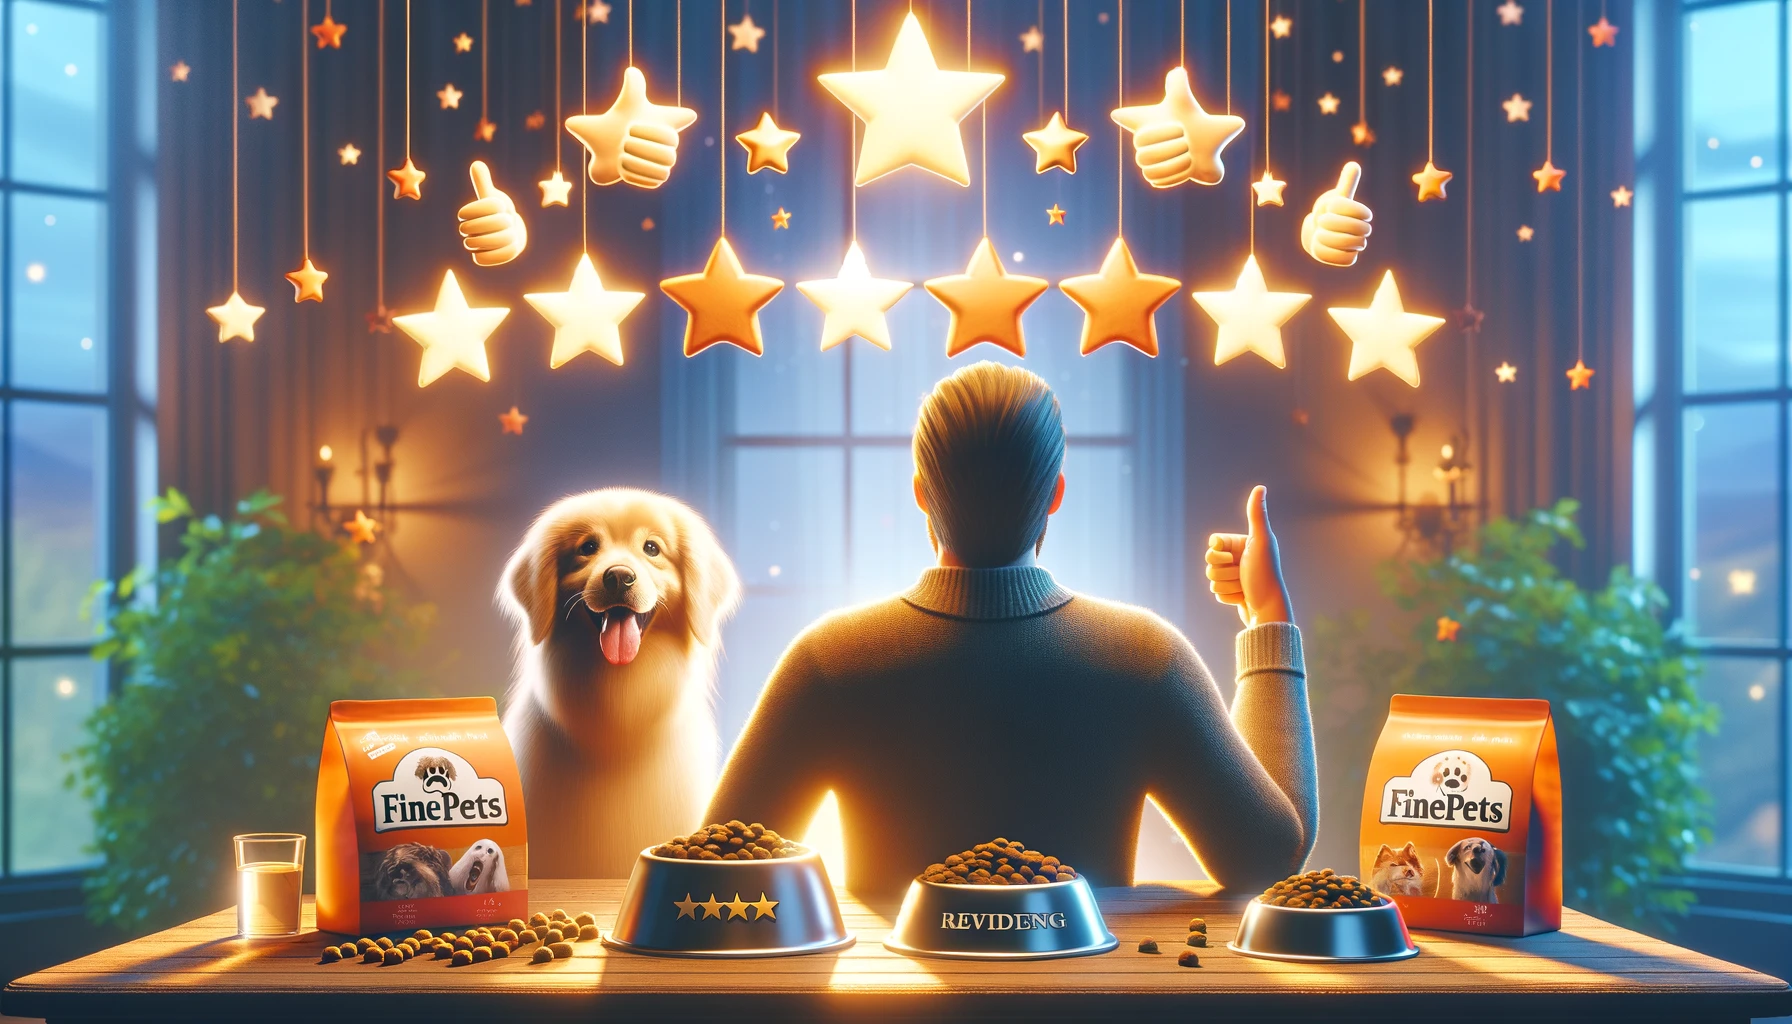 ファインペッツドッグフードに対する顧客満足度をポジティブに描写したもので、幸せな犬のアイコン、星の評価、品質に対するブランドの評判を反映した温かく歓迎的な雰囲気によって象徴されています。